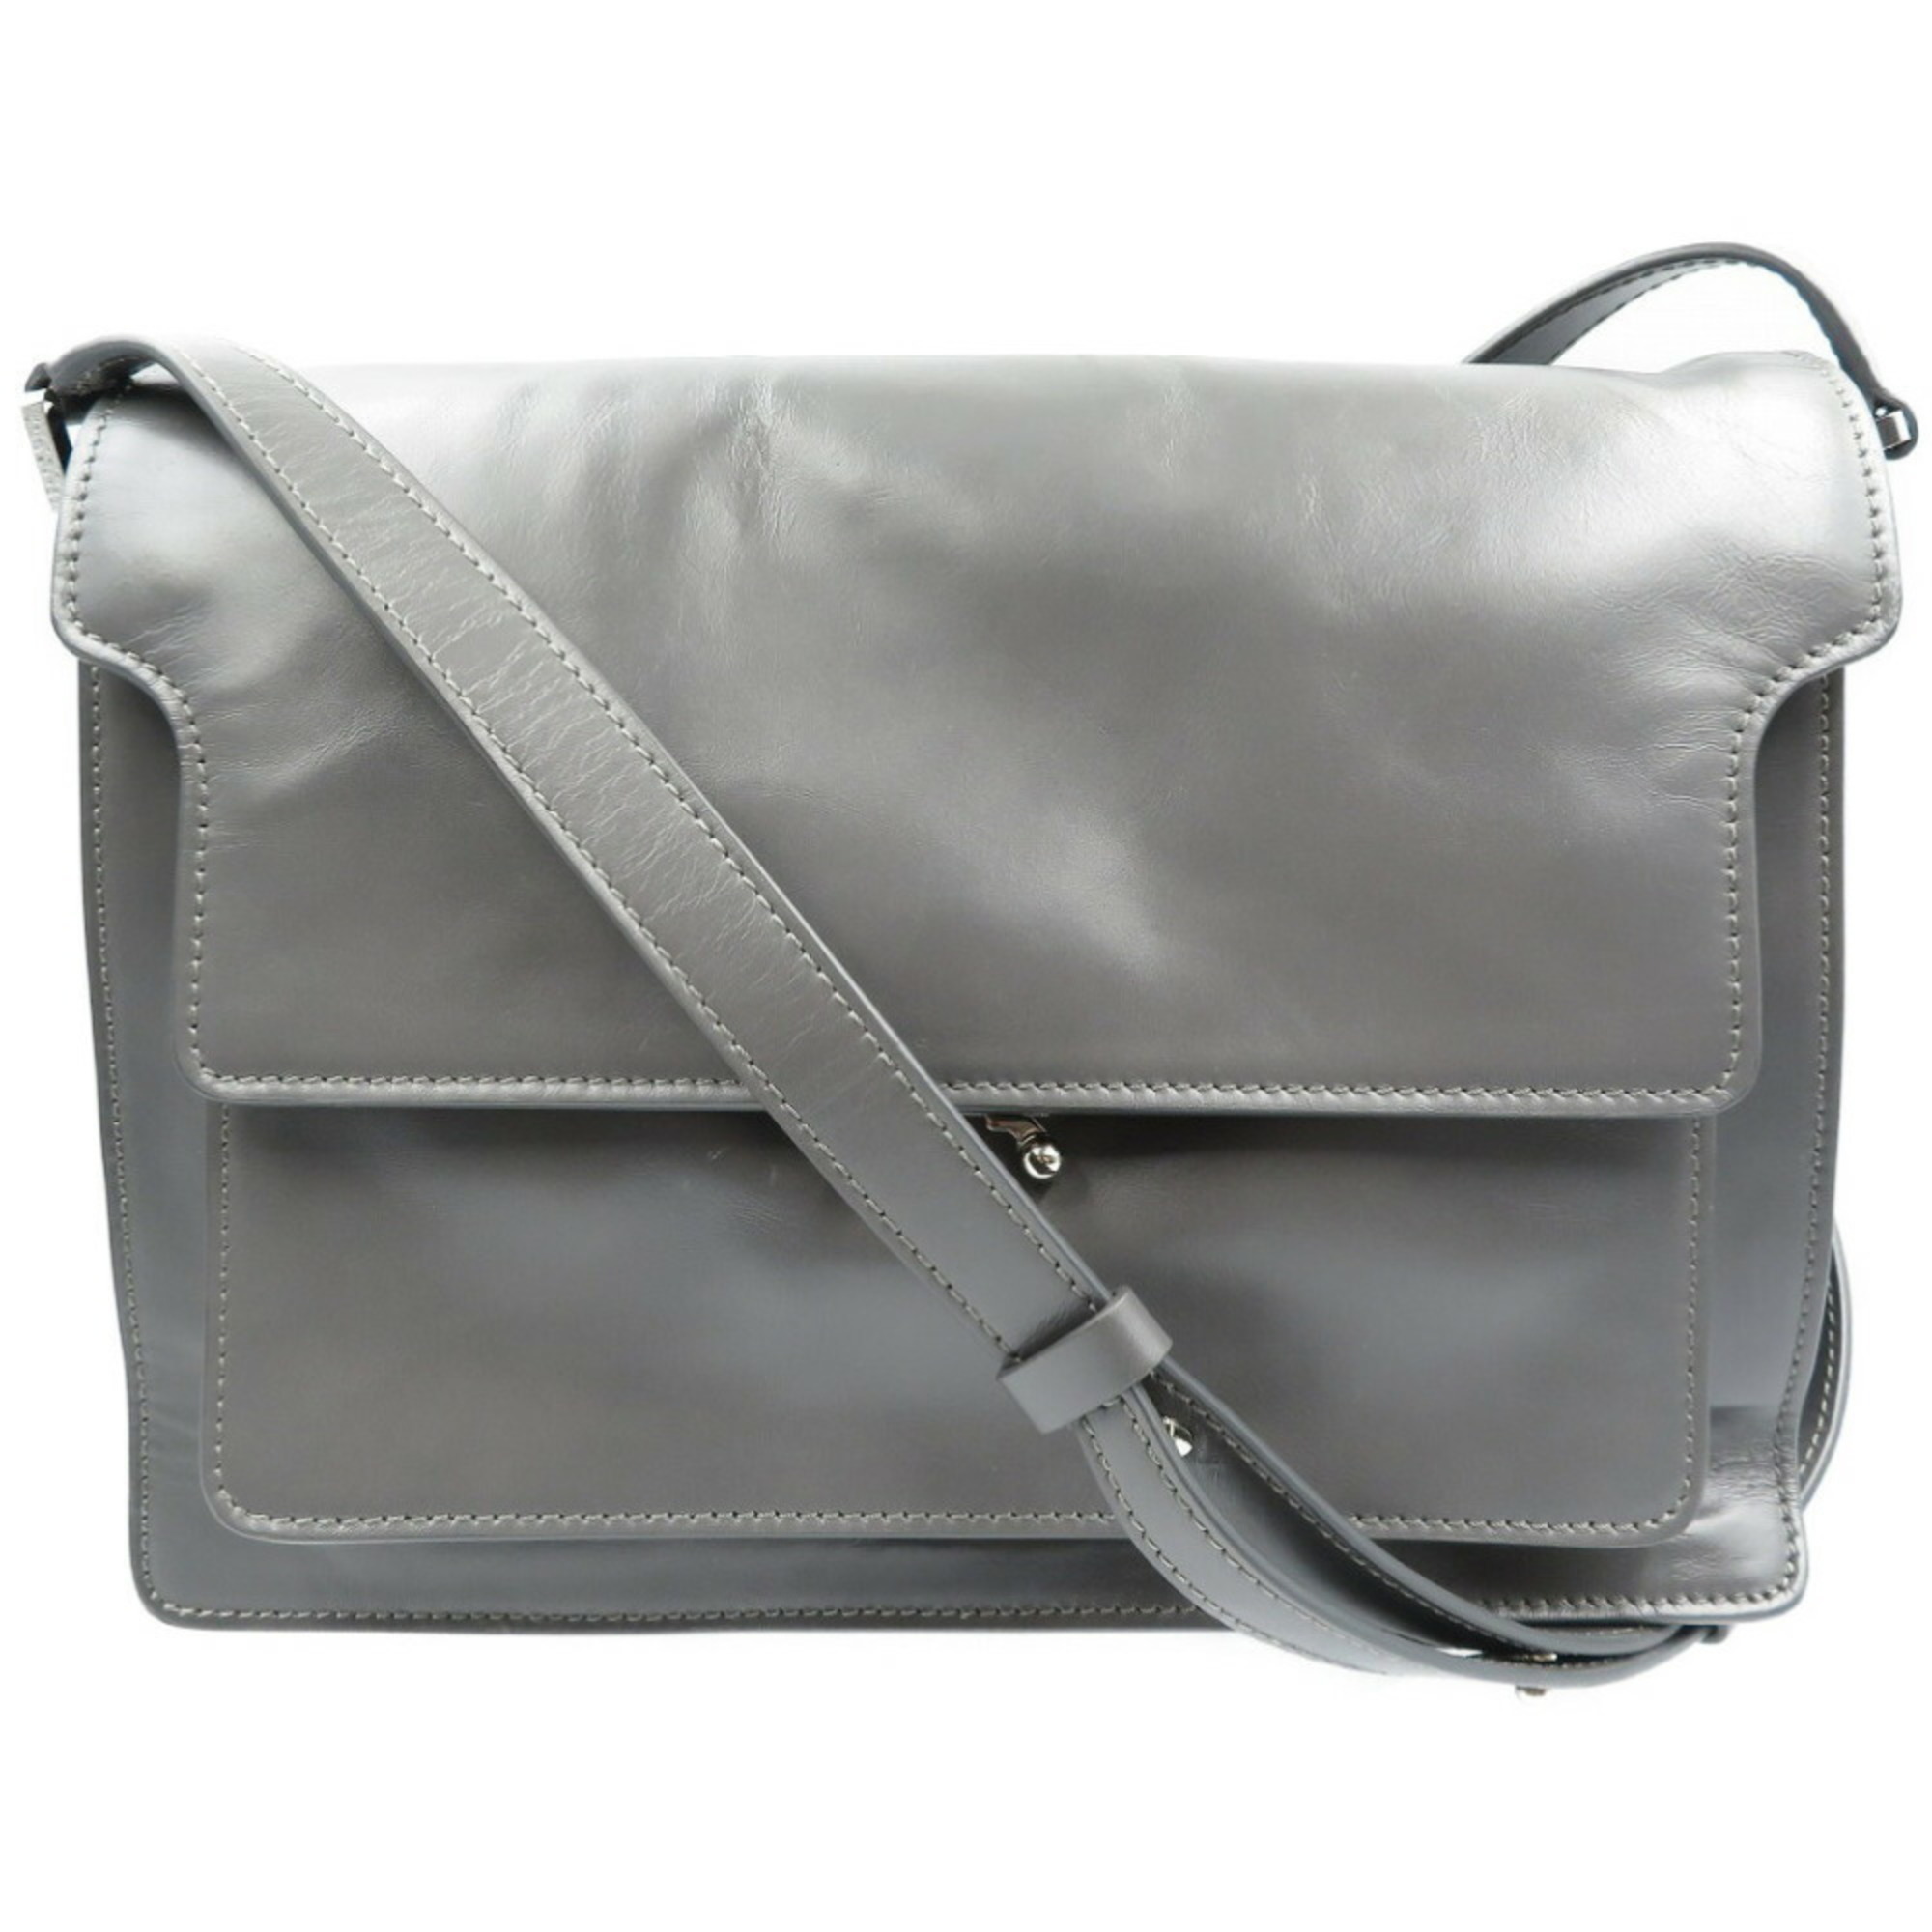 Marni leather gray shoulder bag 0164MARNI 5I0164SI5